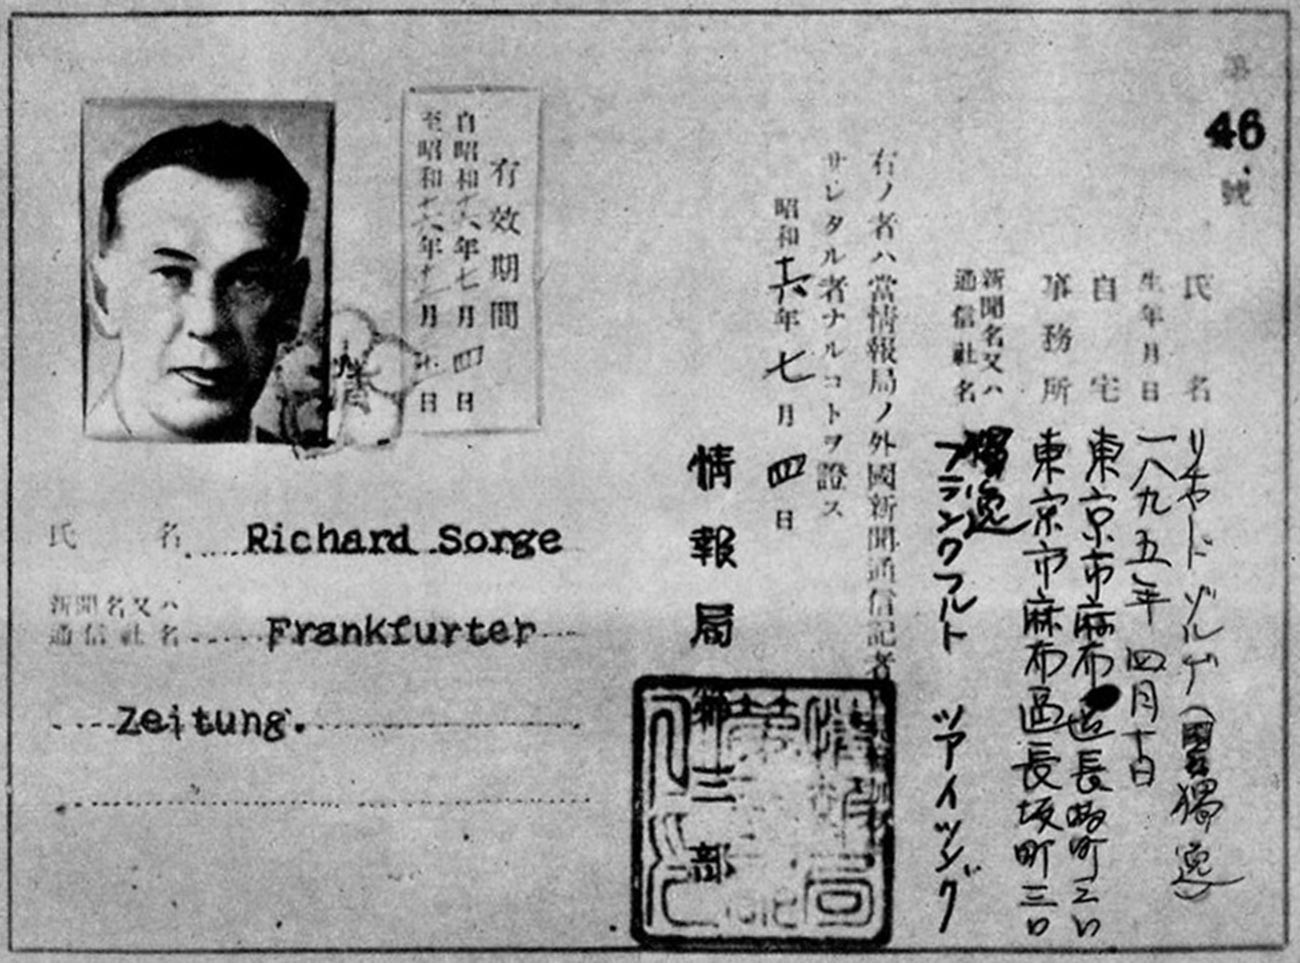 Certificat du secrétaire de presse de l'ambassade d'Allemagne au Japon, Richard Sorge